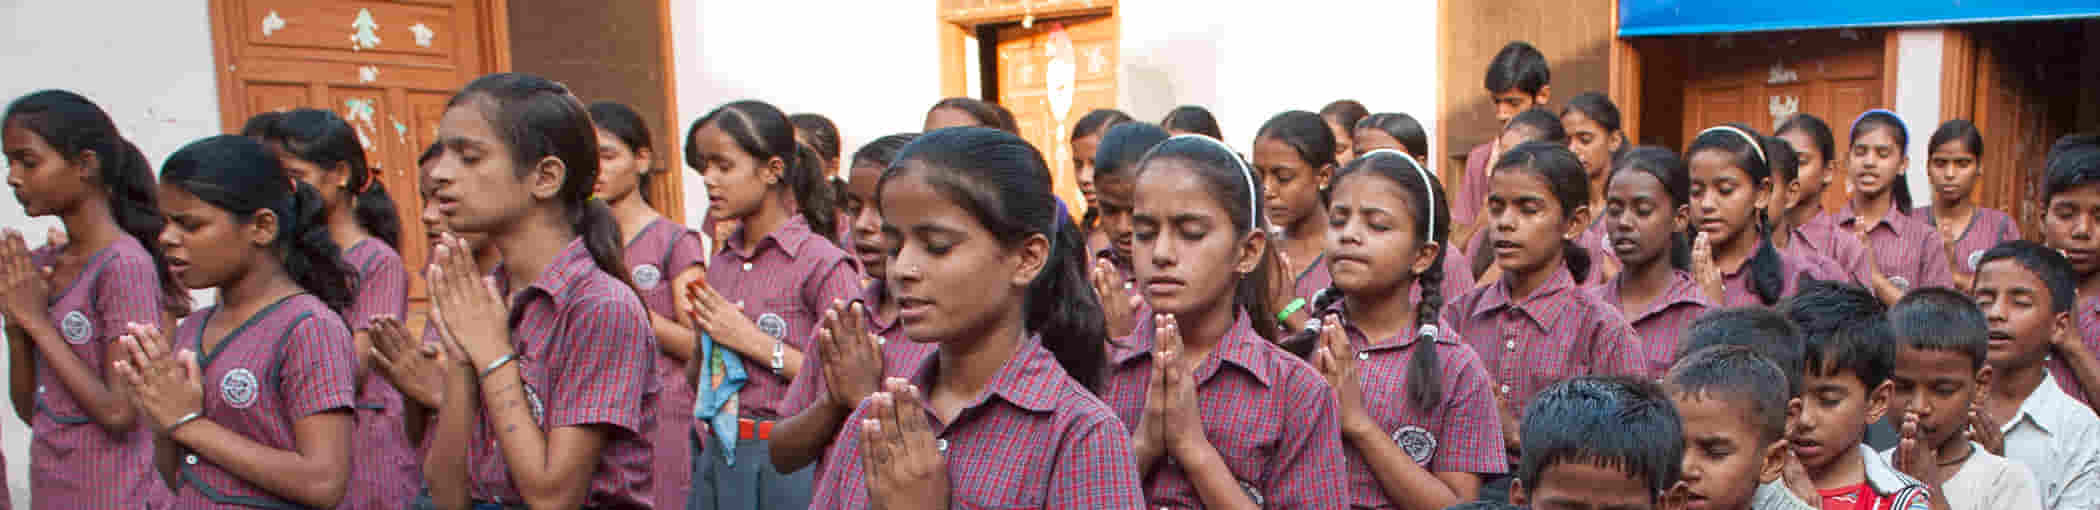 Girls' Education Charities